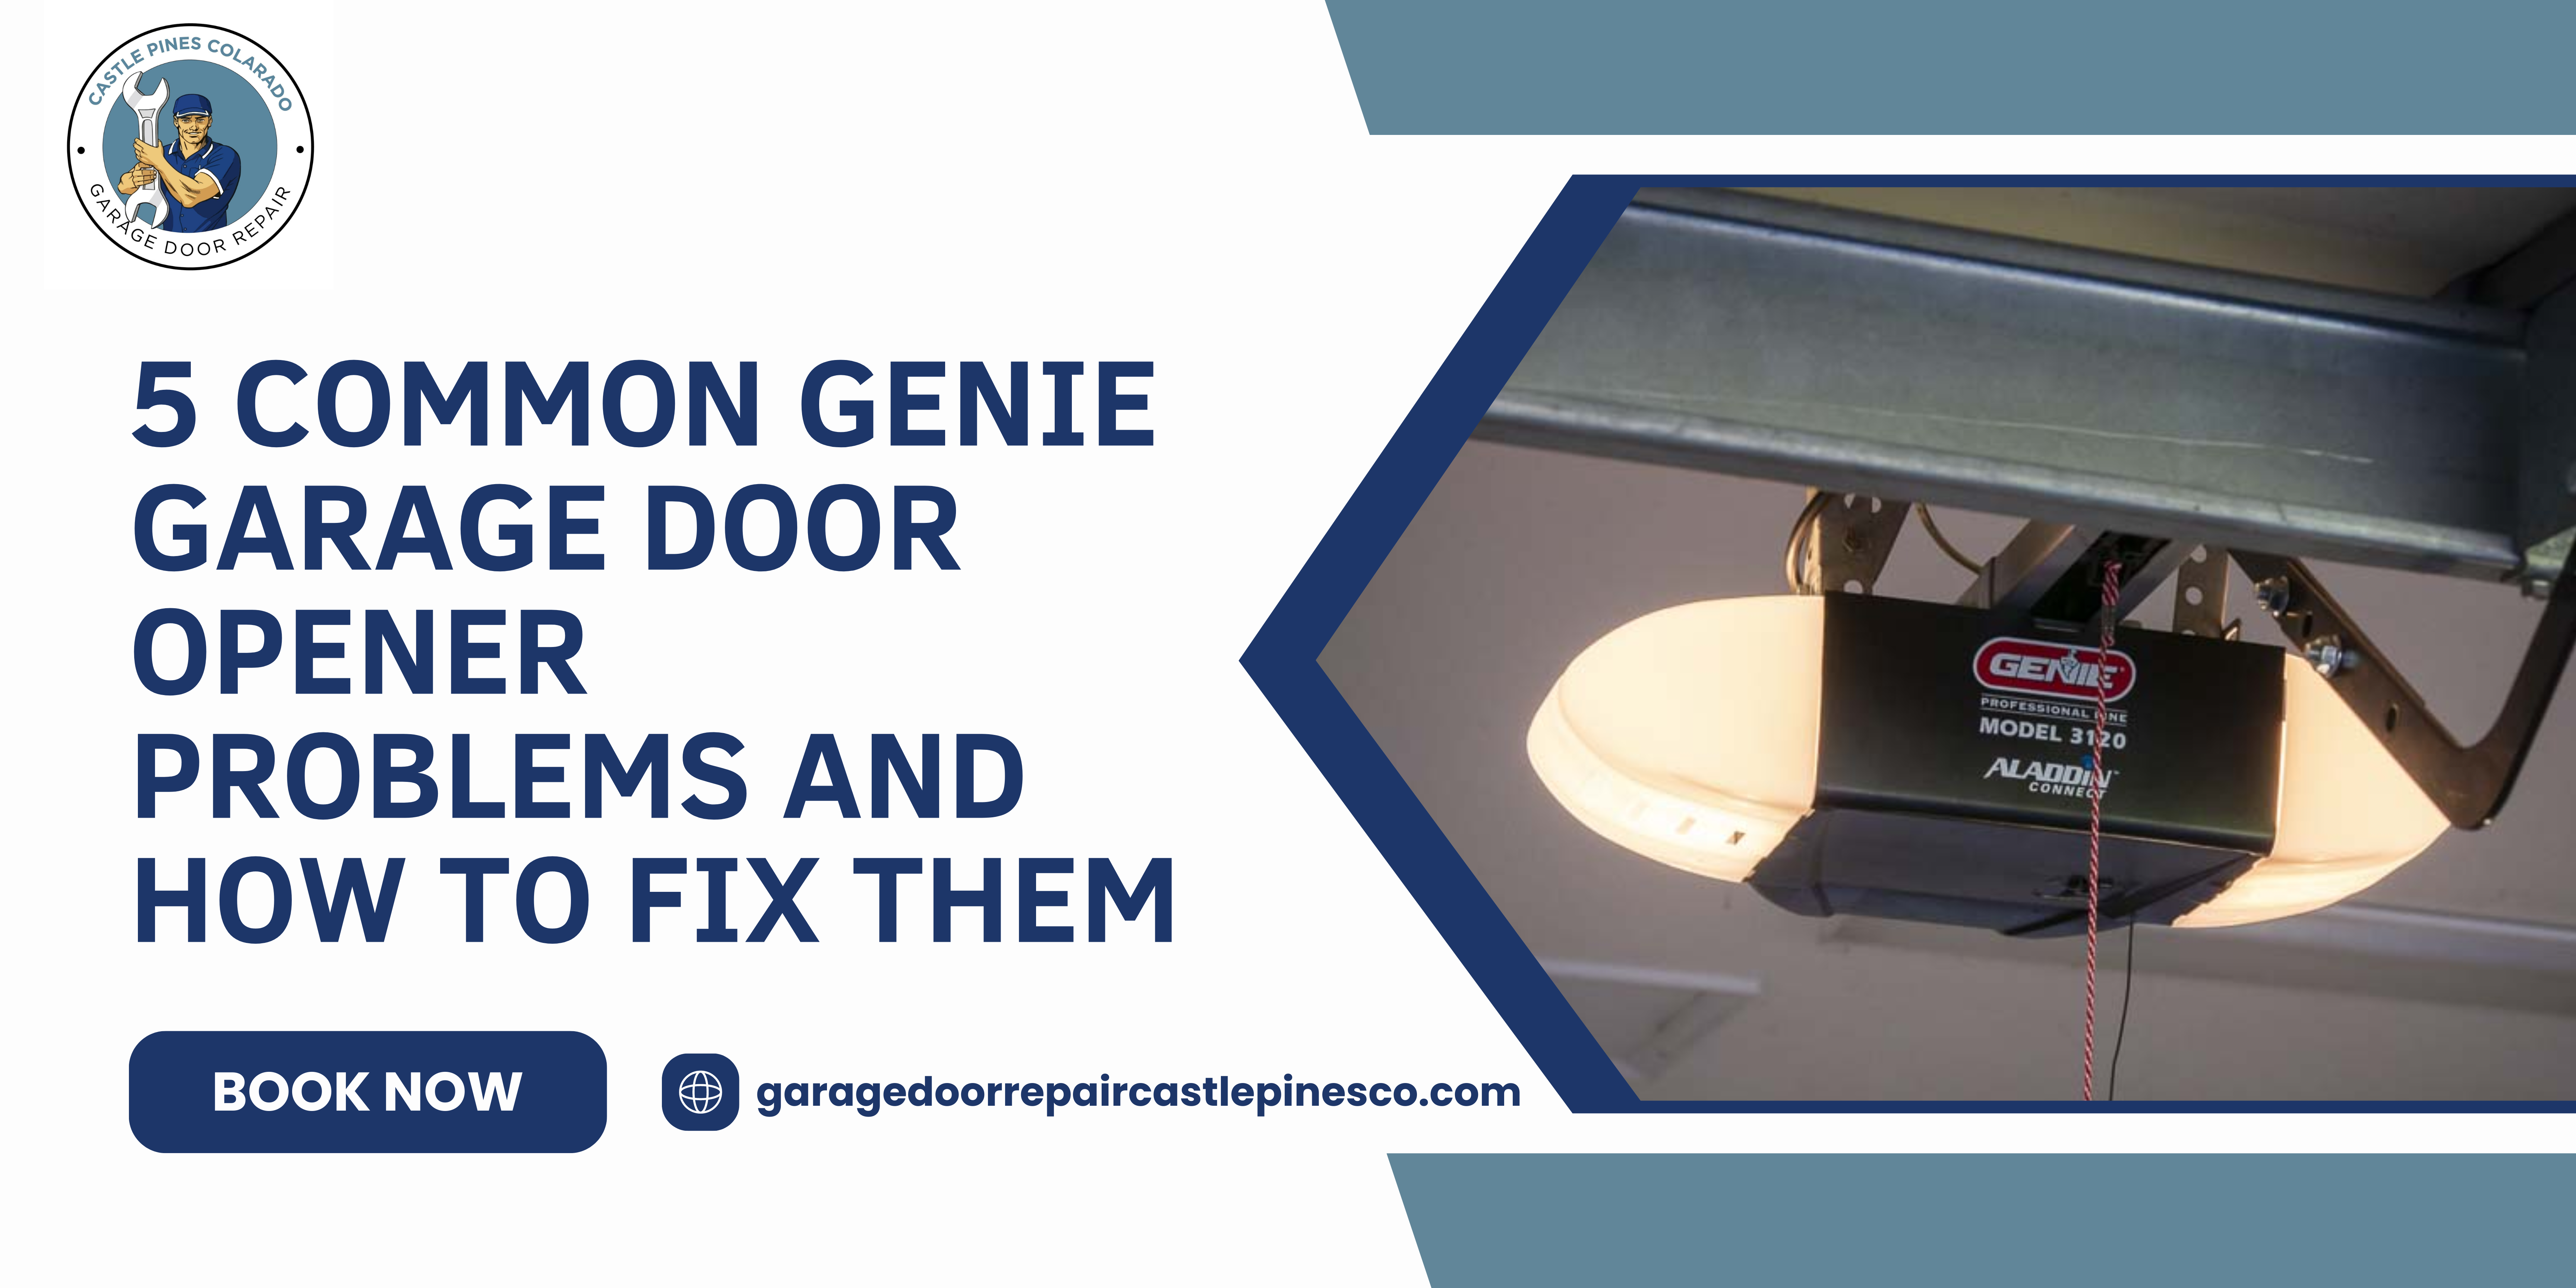 Genie garage door opener repair